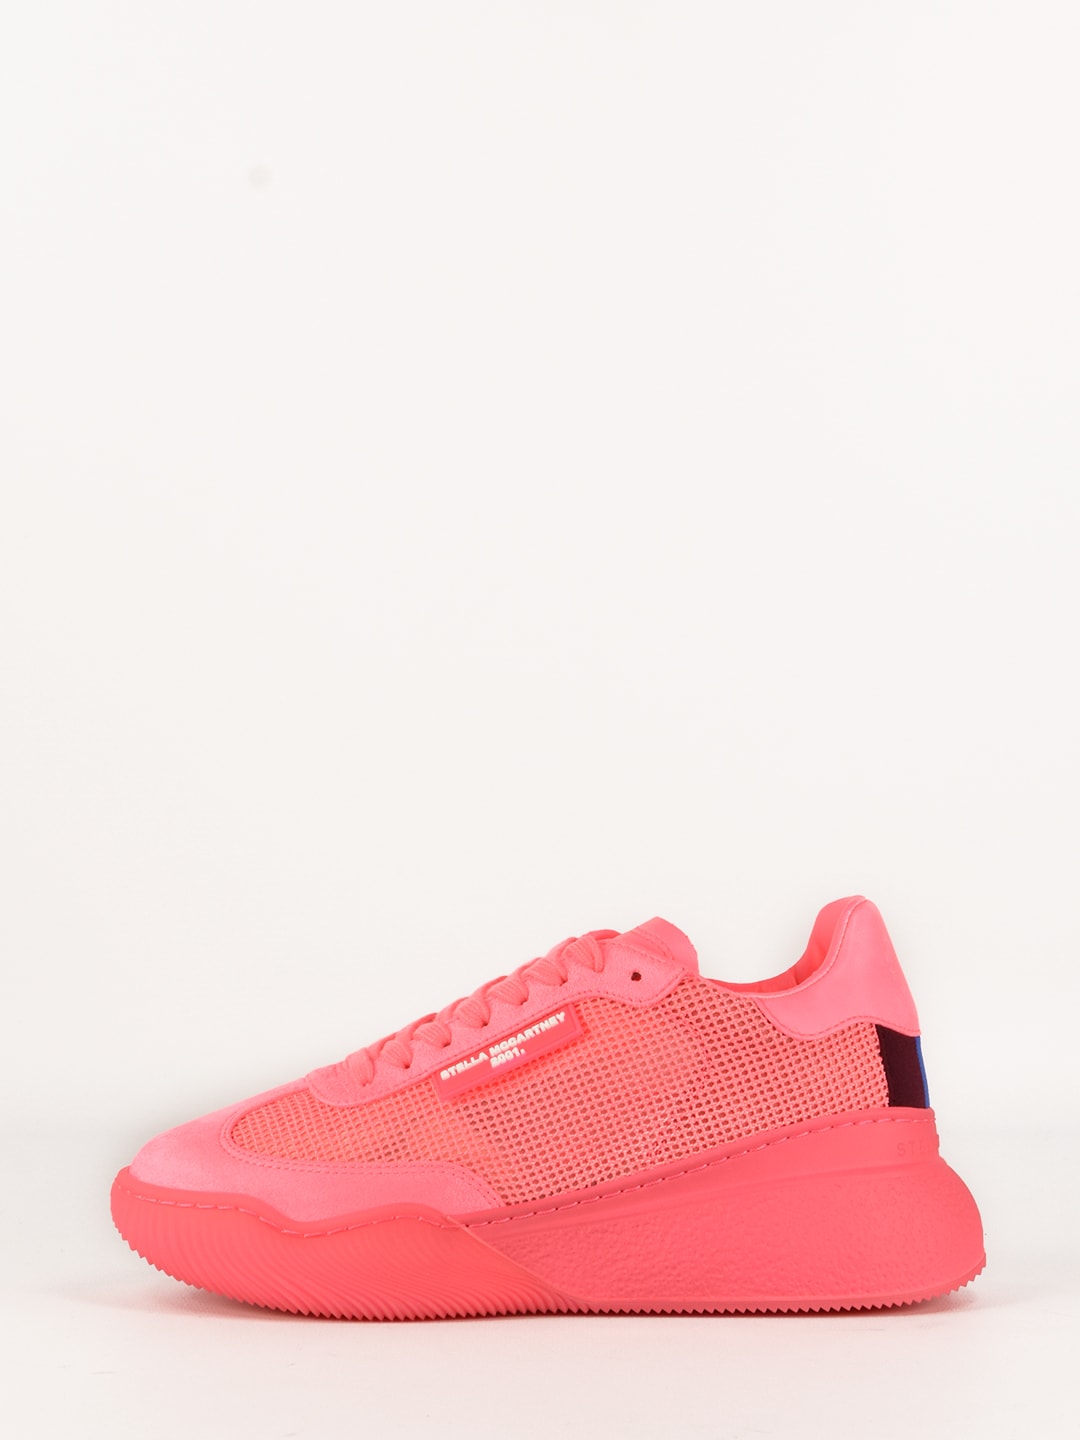 Stella McCartney Bright Pink Loop Sneakers